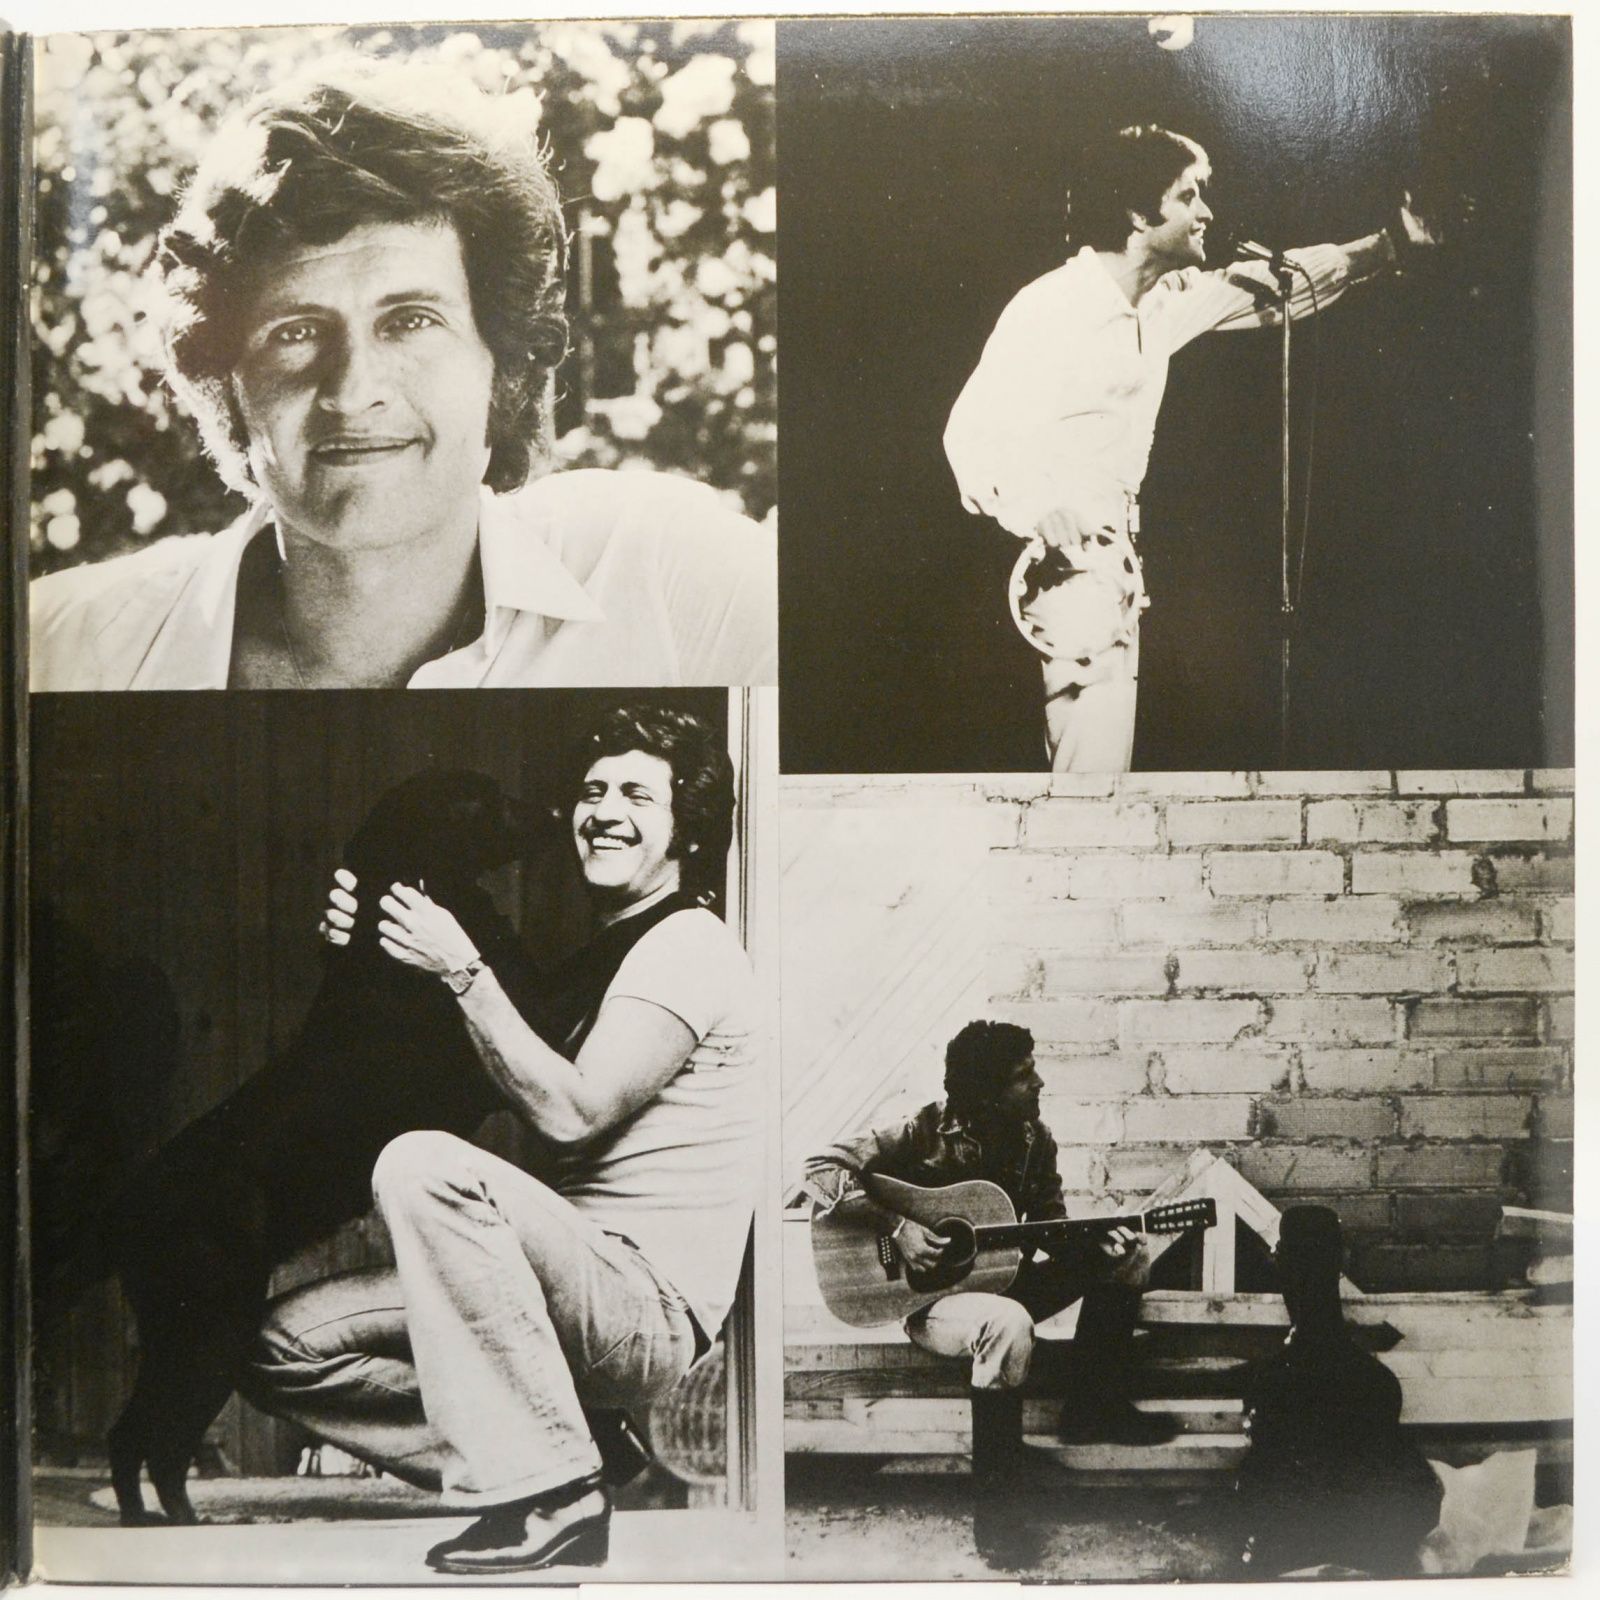 Joe Dassin — Grands Succès Vol. 3 (2LP, France), 1976